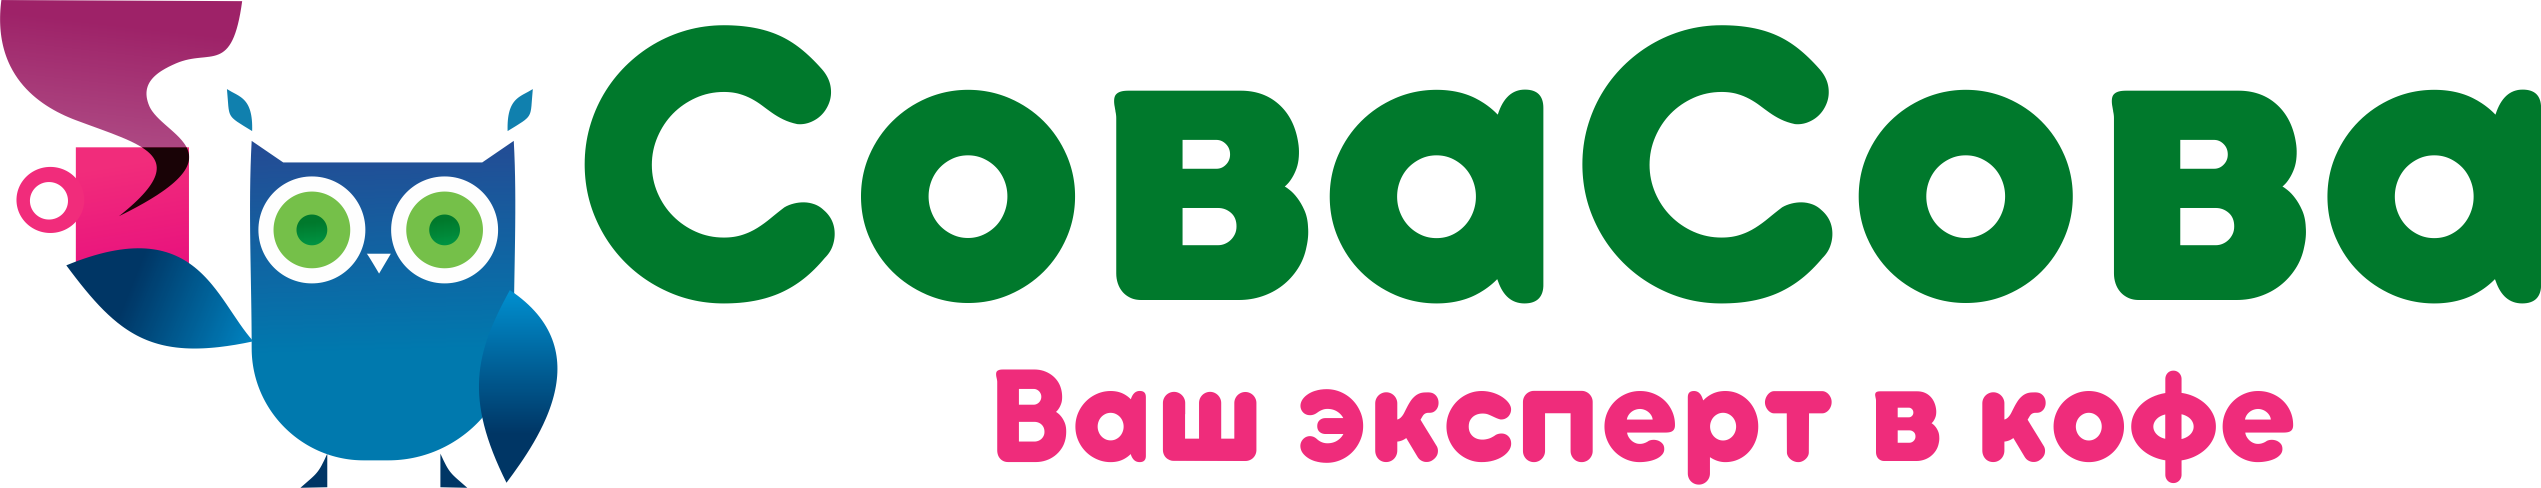 Лого интернет магаизну кофе Сова 